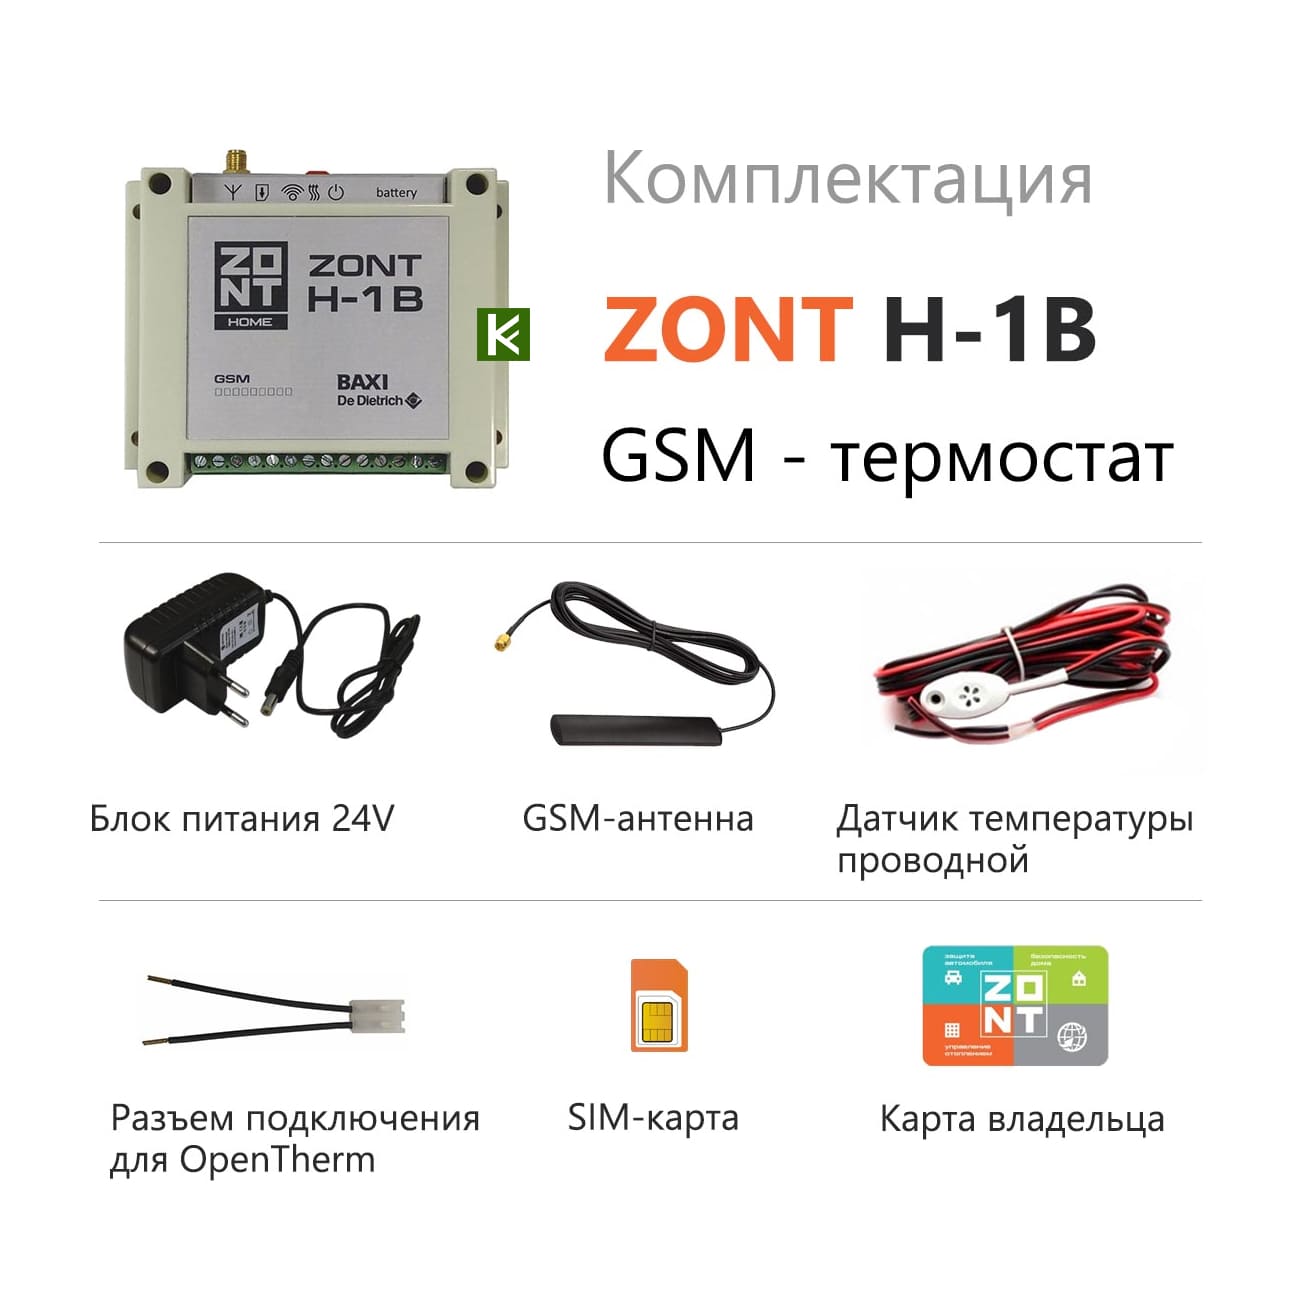 Zont eco. Zont h-1v Baxi OPENTHERM. GSM Zont h-1v. Система удаленного управления котлом Zont-h1b Baxi. Zont h-1 контроллер.